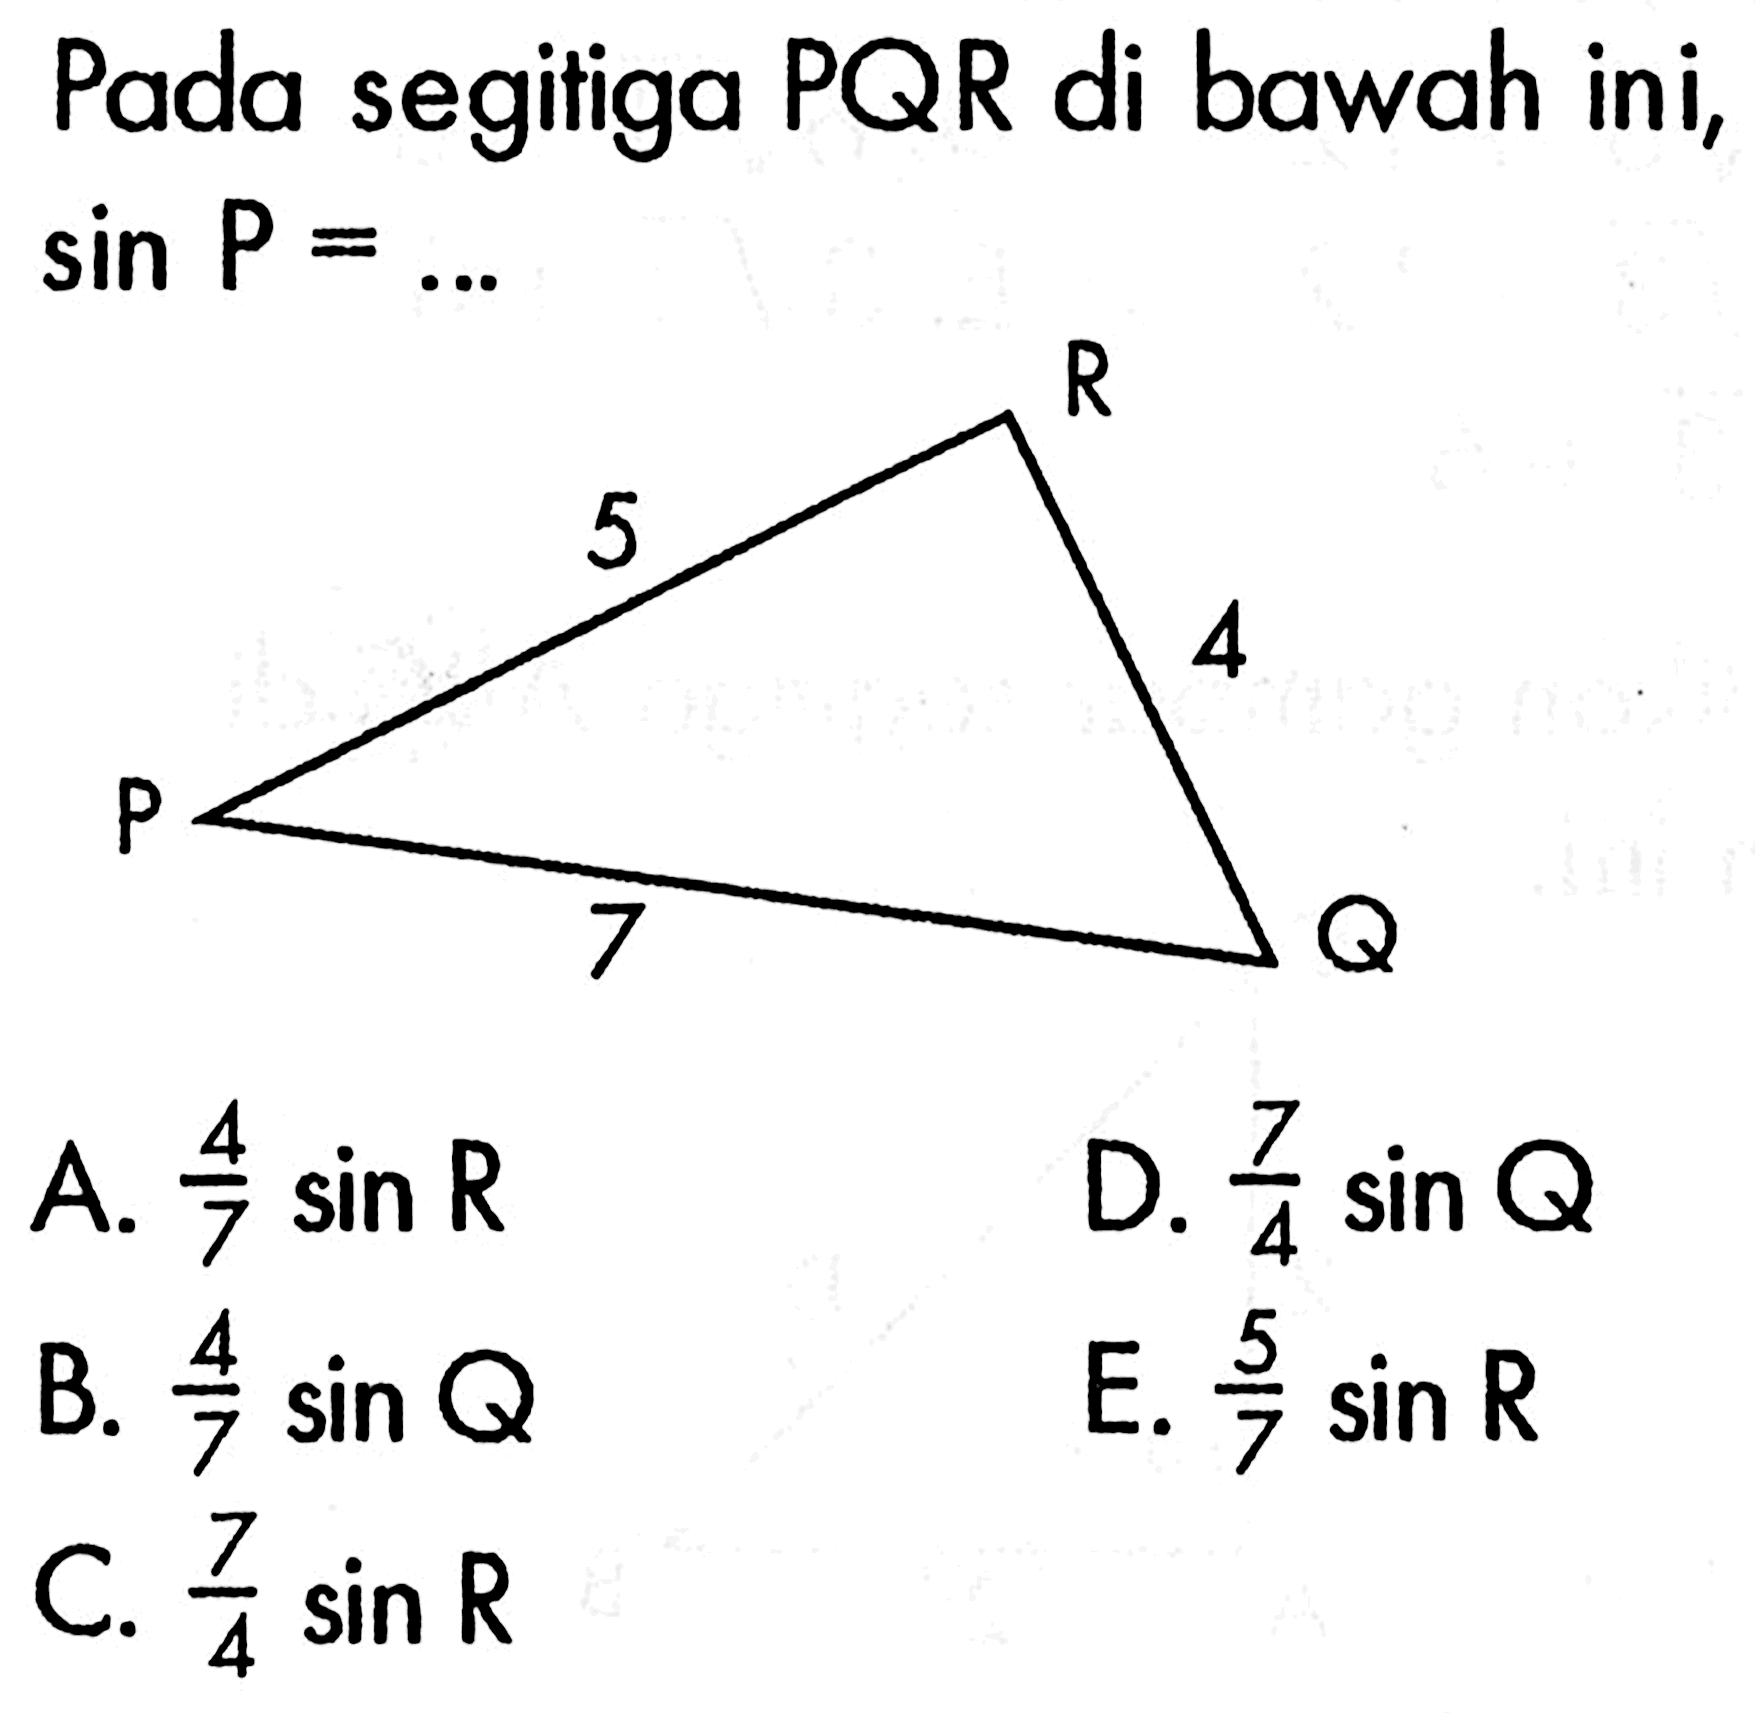 Pada segitiga  PQR  di bawah ini,  sin P=.... A.  4/7 sin R D.  7/4 sin Q B.  4/7 sin Q E.  5/7 sin R C.  7/4 sin R 